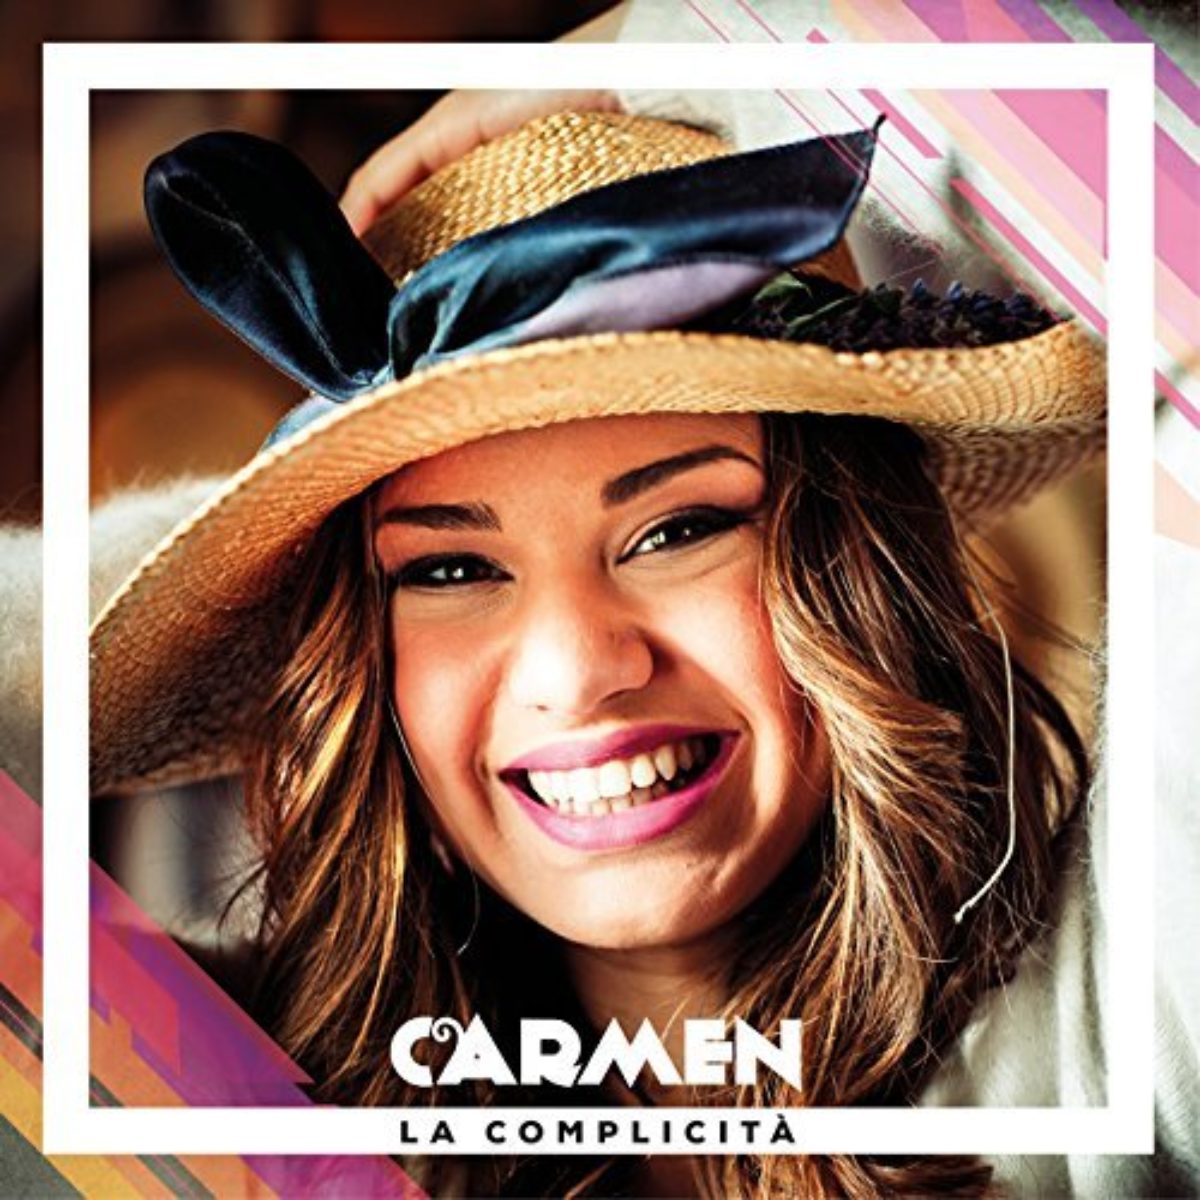 Carmen-La-Complicita-Amici-EP-cover-1200x1200.jpg